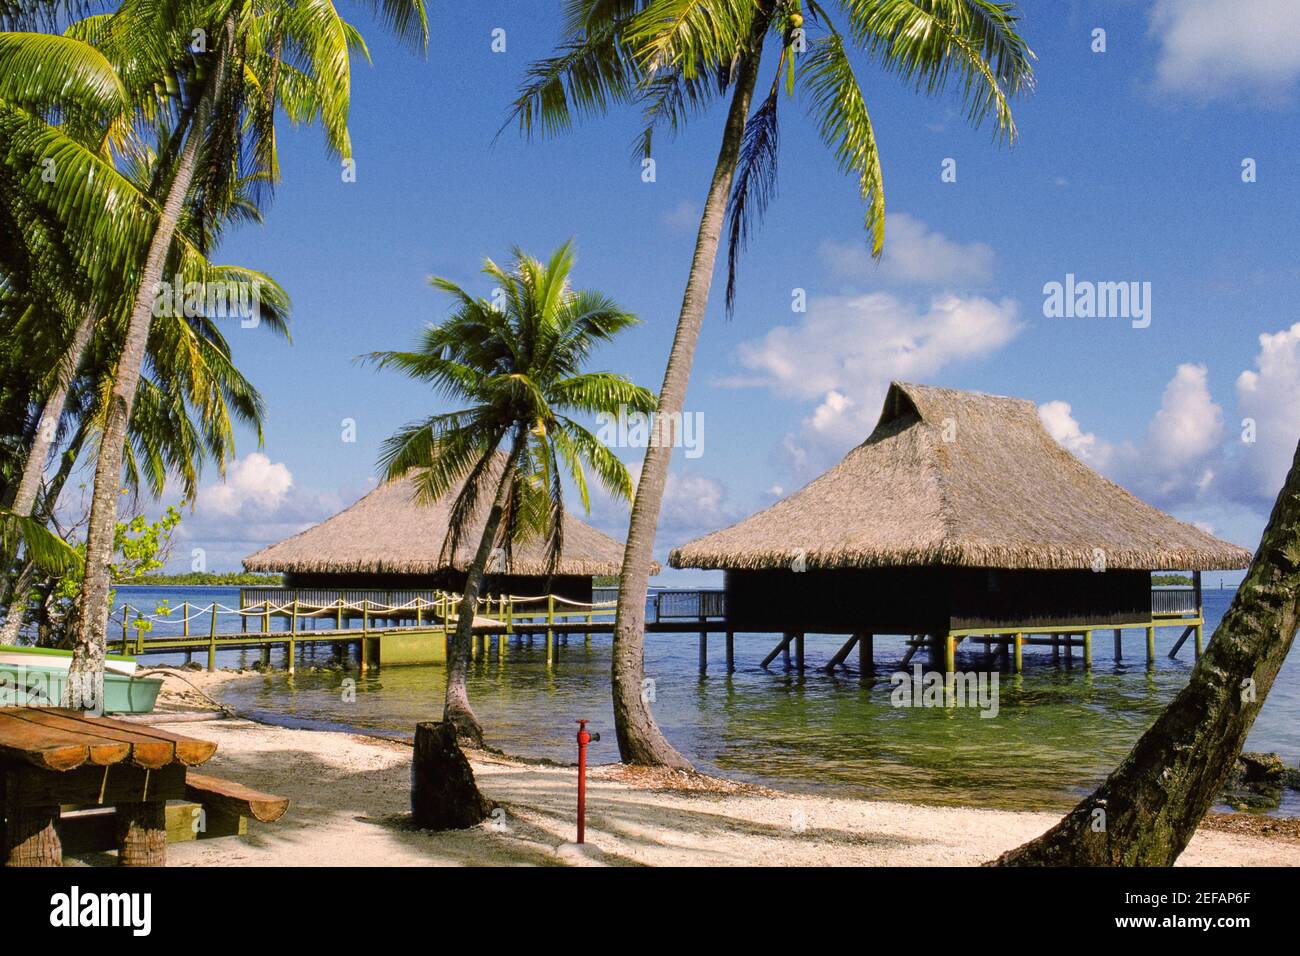 Maison à pilotis en mer, Bali Hai Hotel, Bora Bora, Iles de la Société,  Polynésie française Photo Stock - Alamy